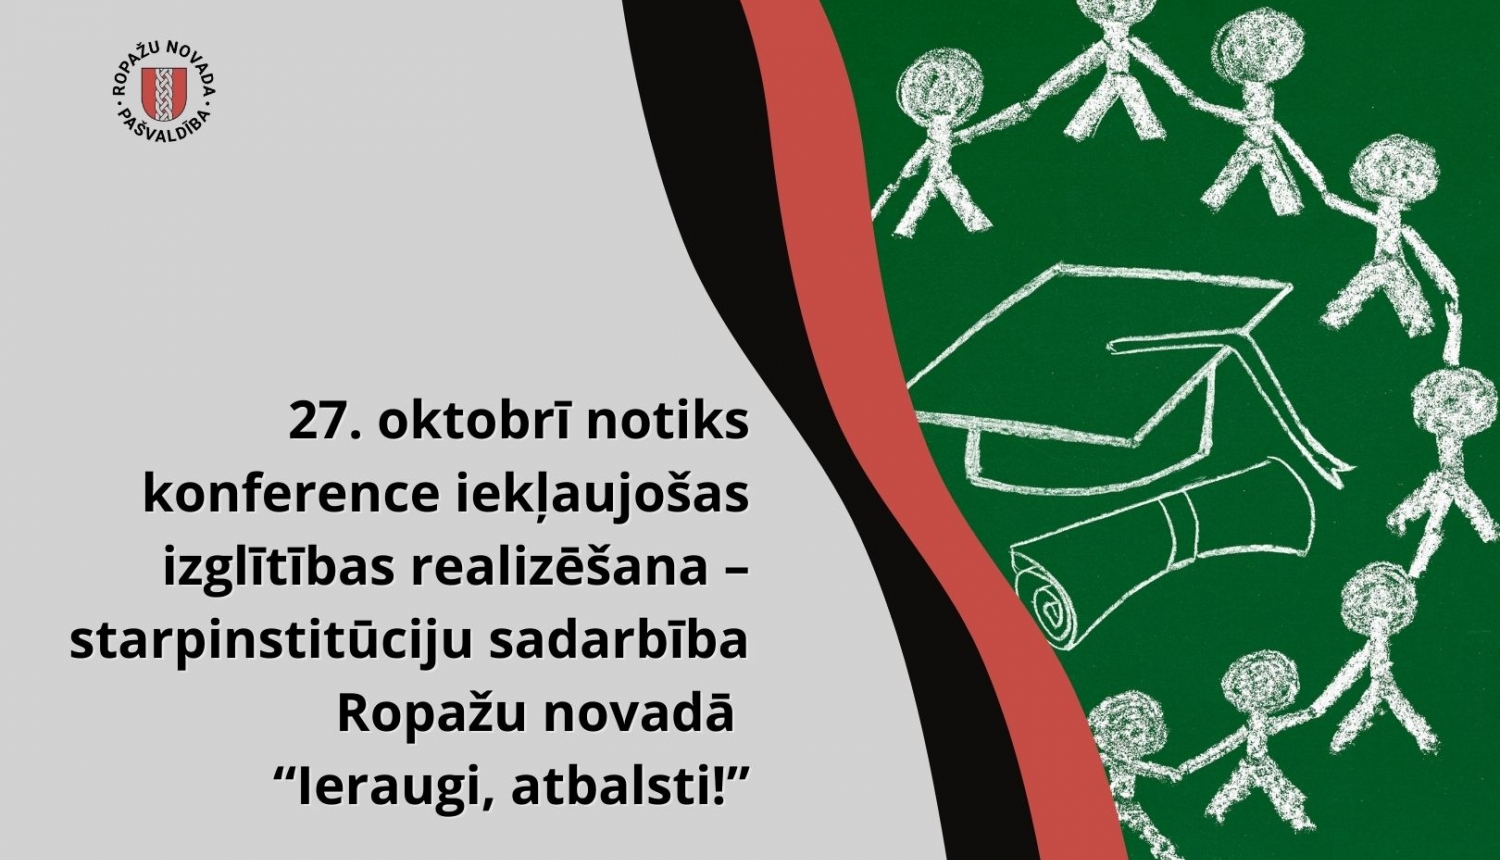 27. oktobrī notiks konference iekļaujošas izglītības realizēšana – starpinstitūciju sadarbība Ropažu novadā “Ieraugi, atbalsti!”